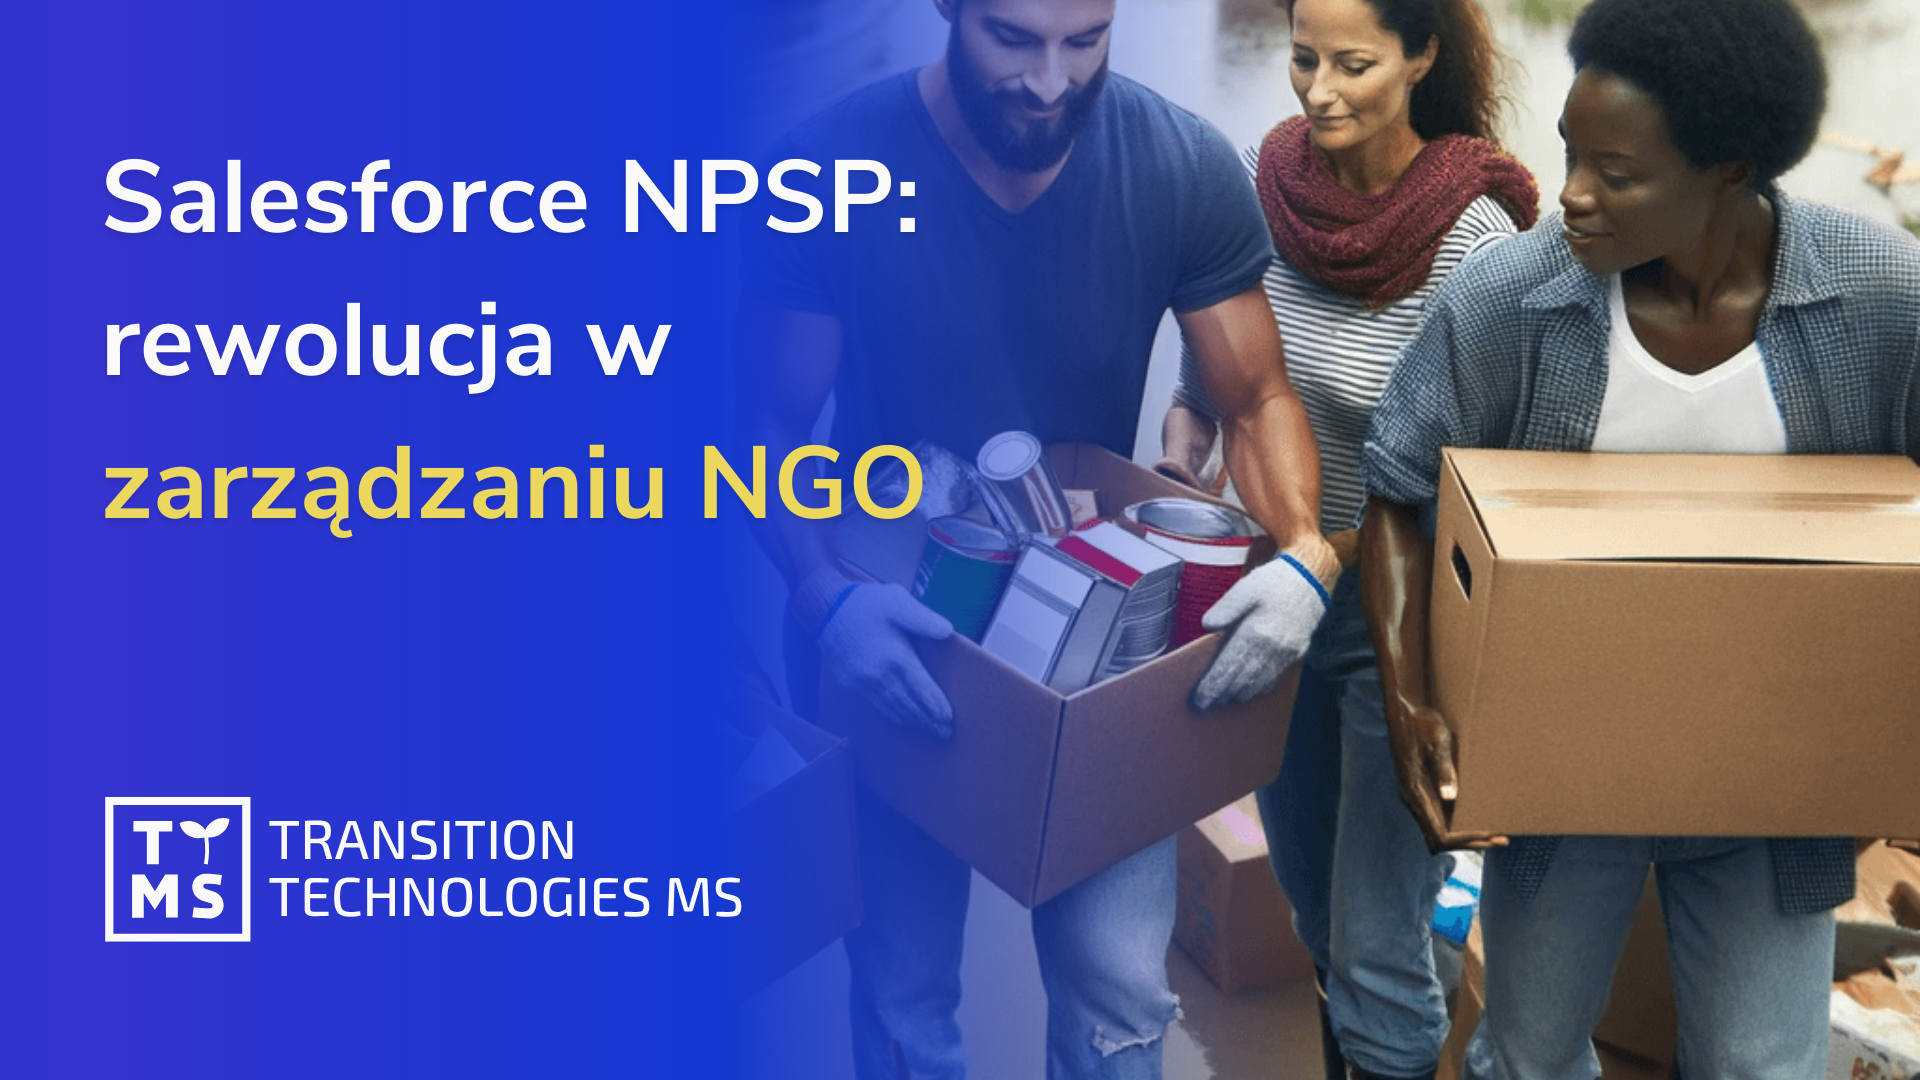 Salesforce NPSP: rewolucja w zarządzaniu organizacją humanitarną